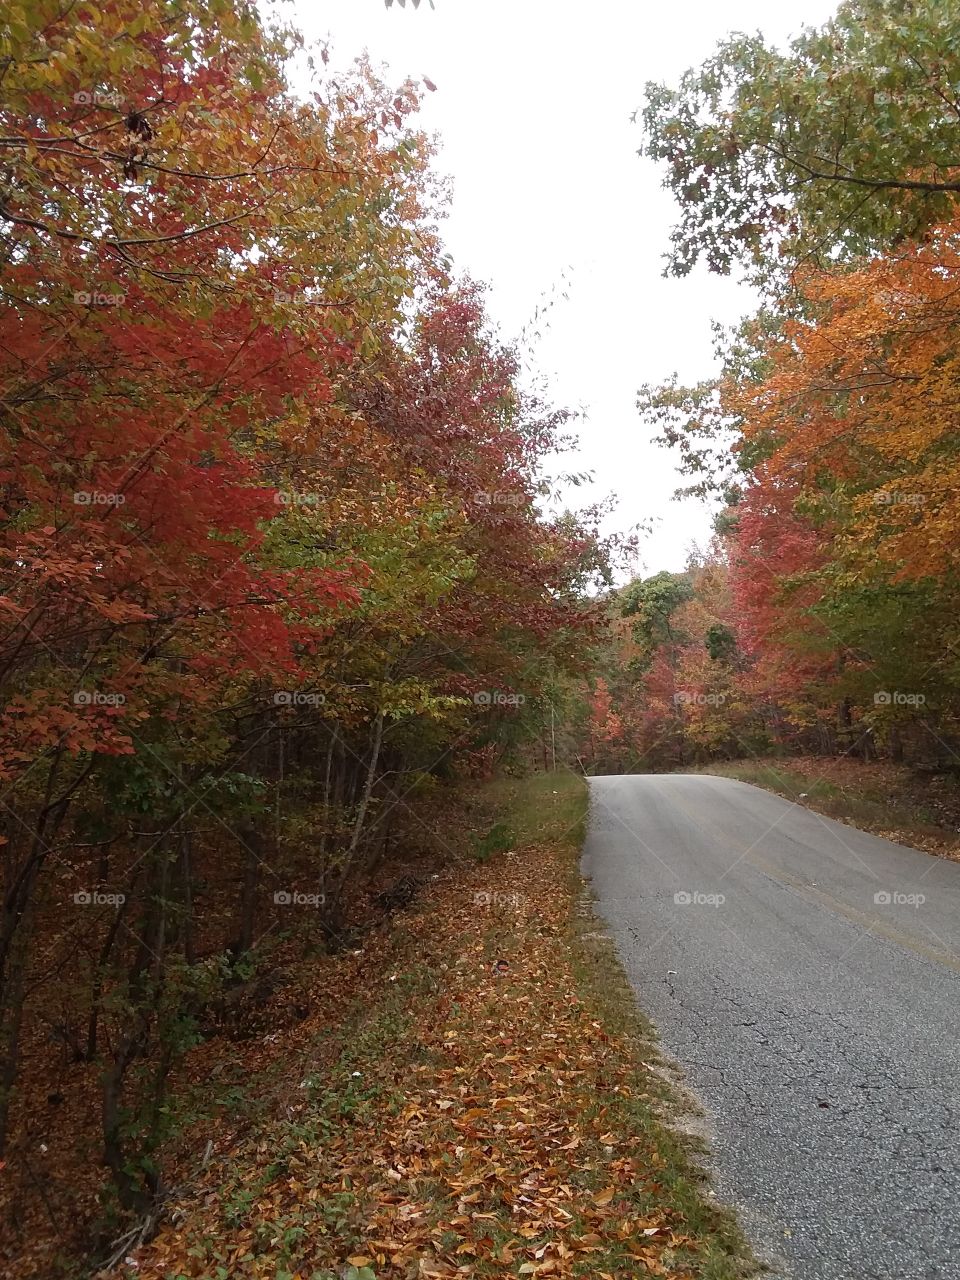 Beautiful autumn foliage along a country lane